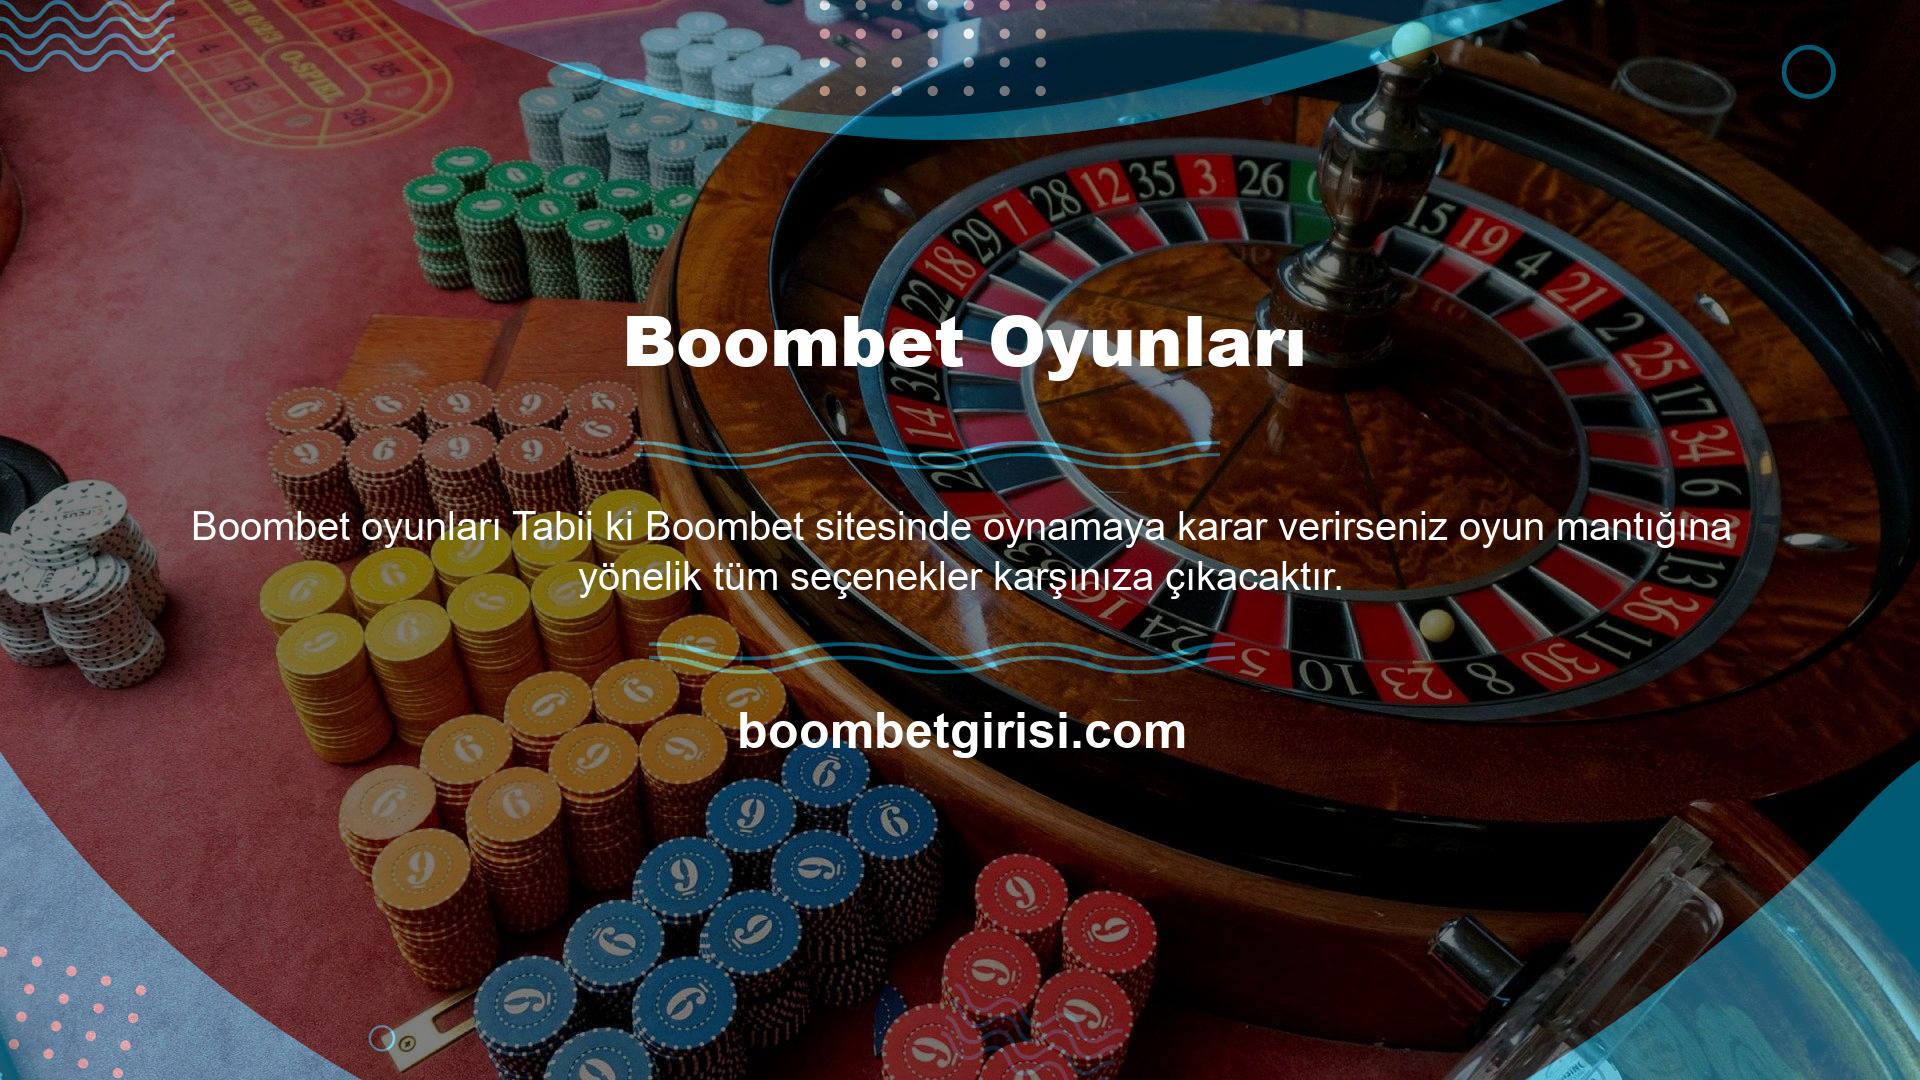 Boombet Otel Oyunları bu sitenin sunduğu online oyun kategorisini tanımlar